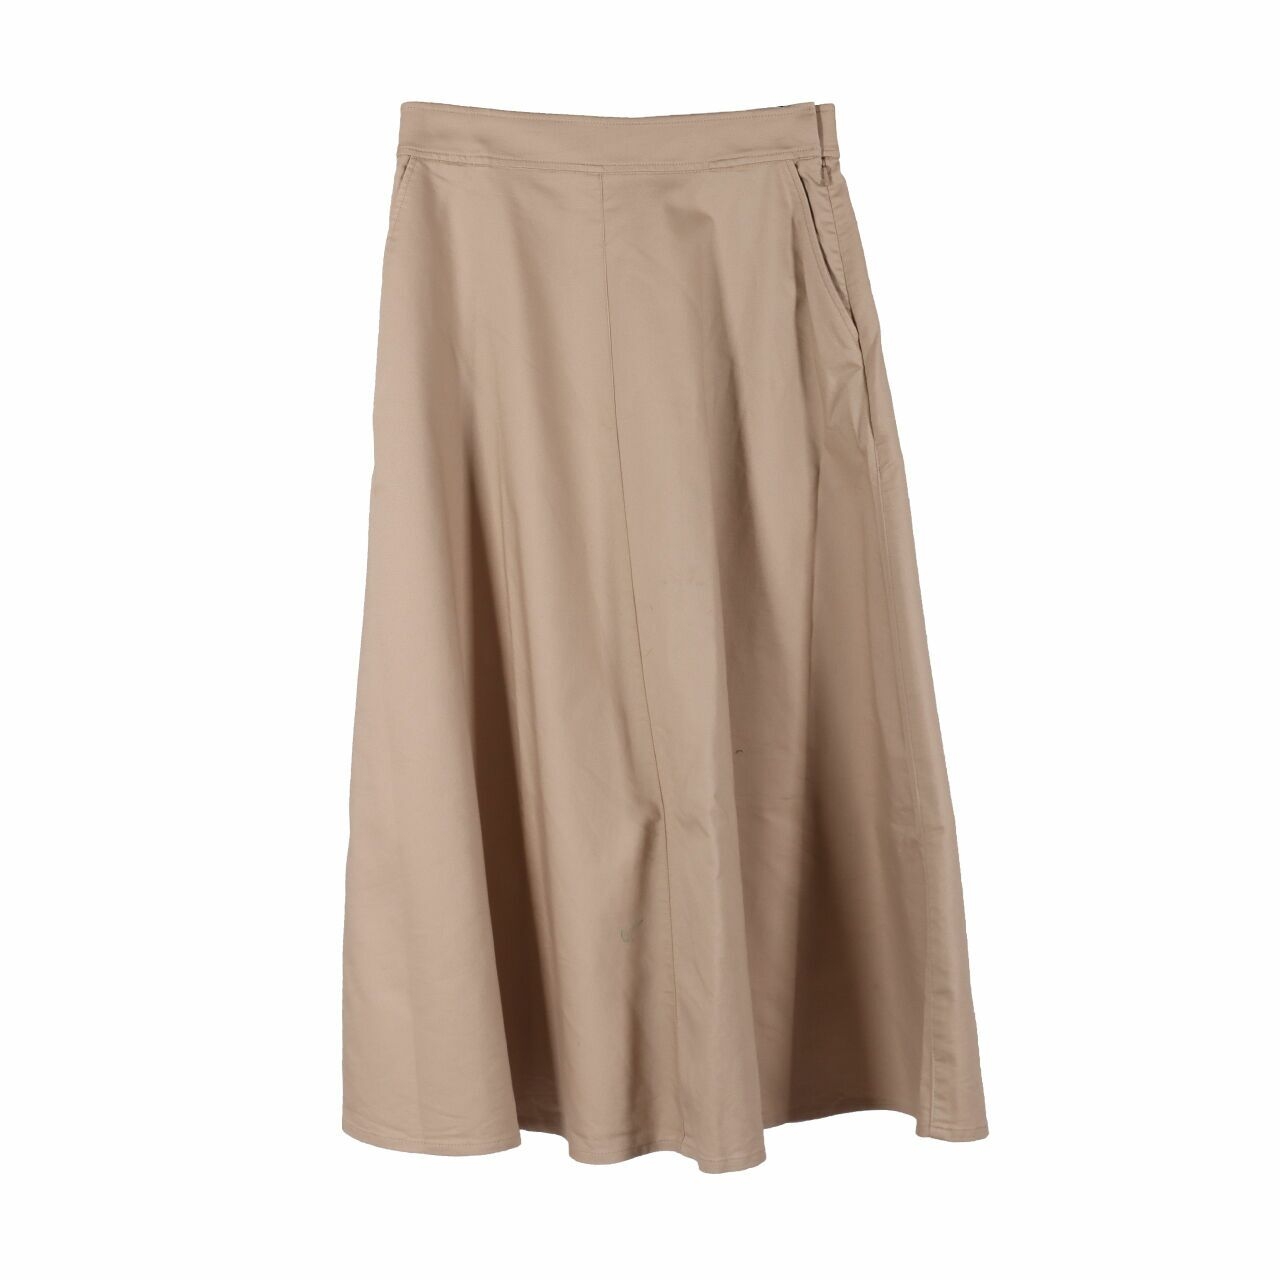 UNIQLO Khaki Maxi Skirt